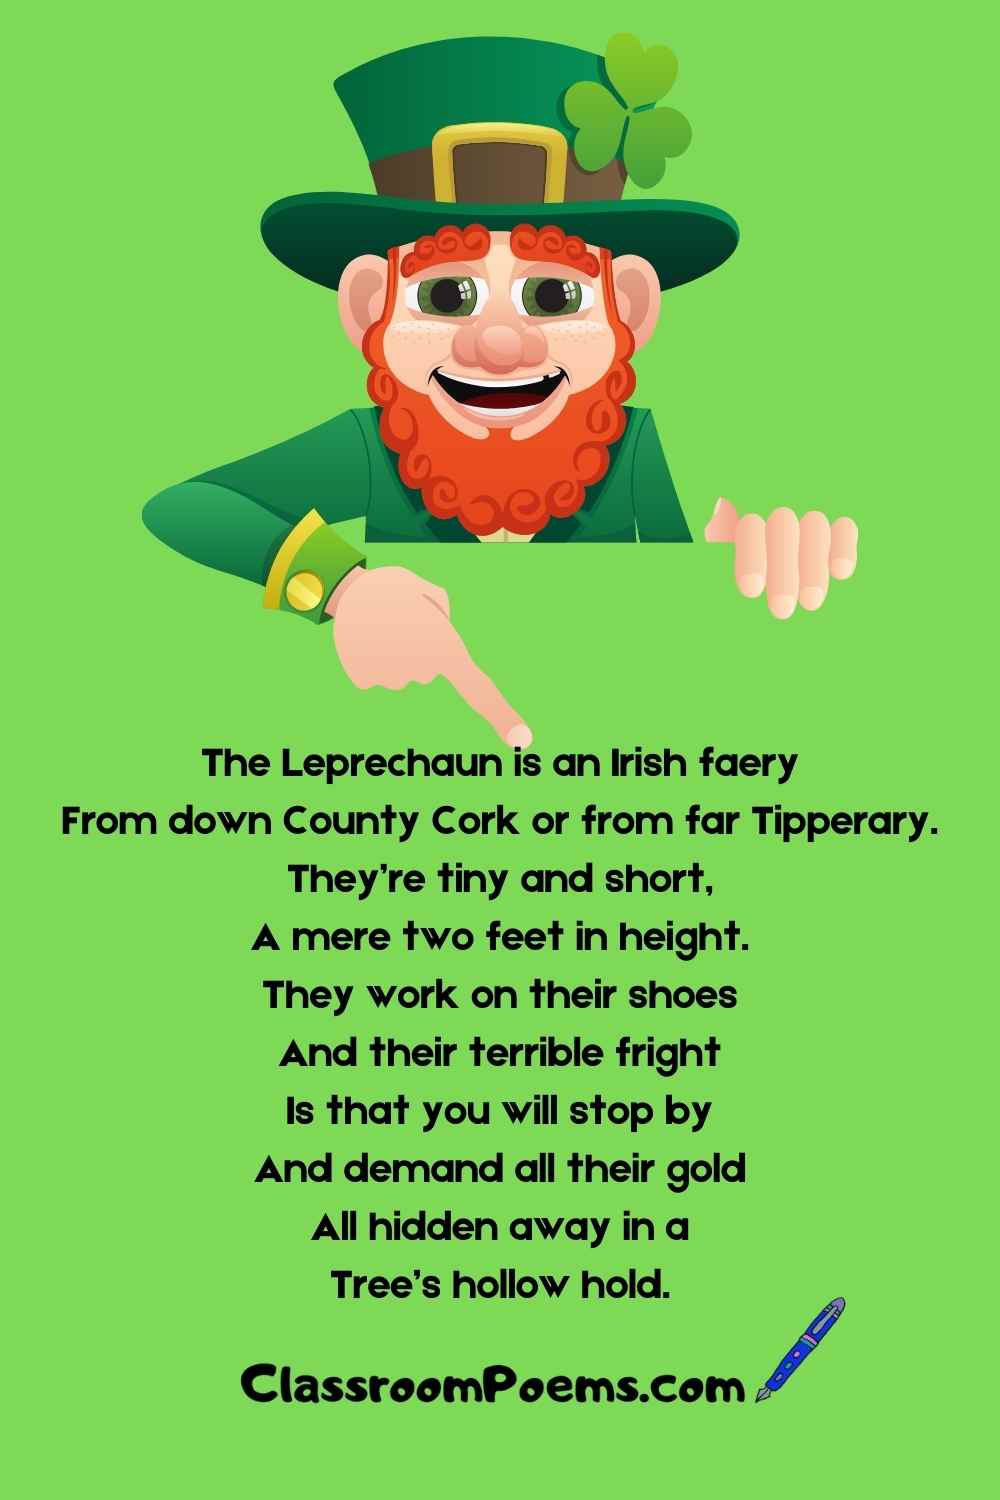 Funny Irish Poems